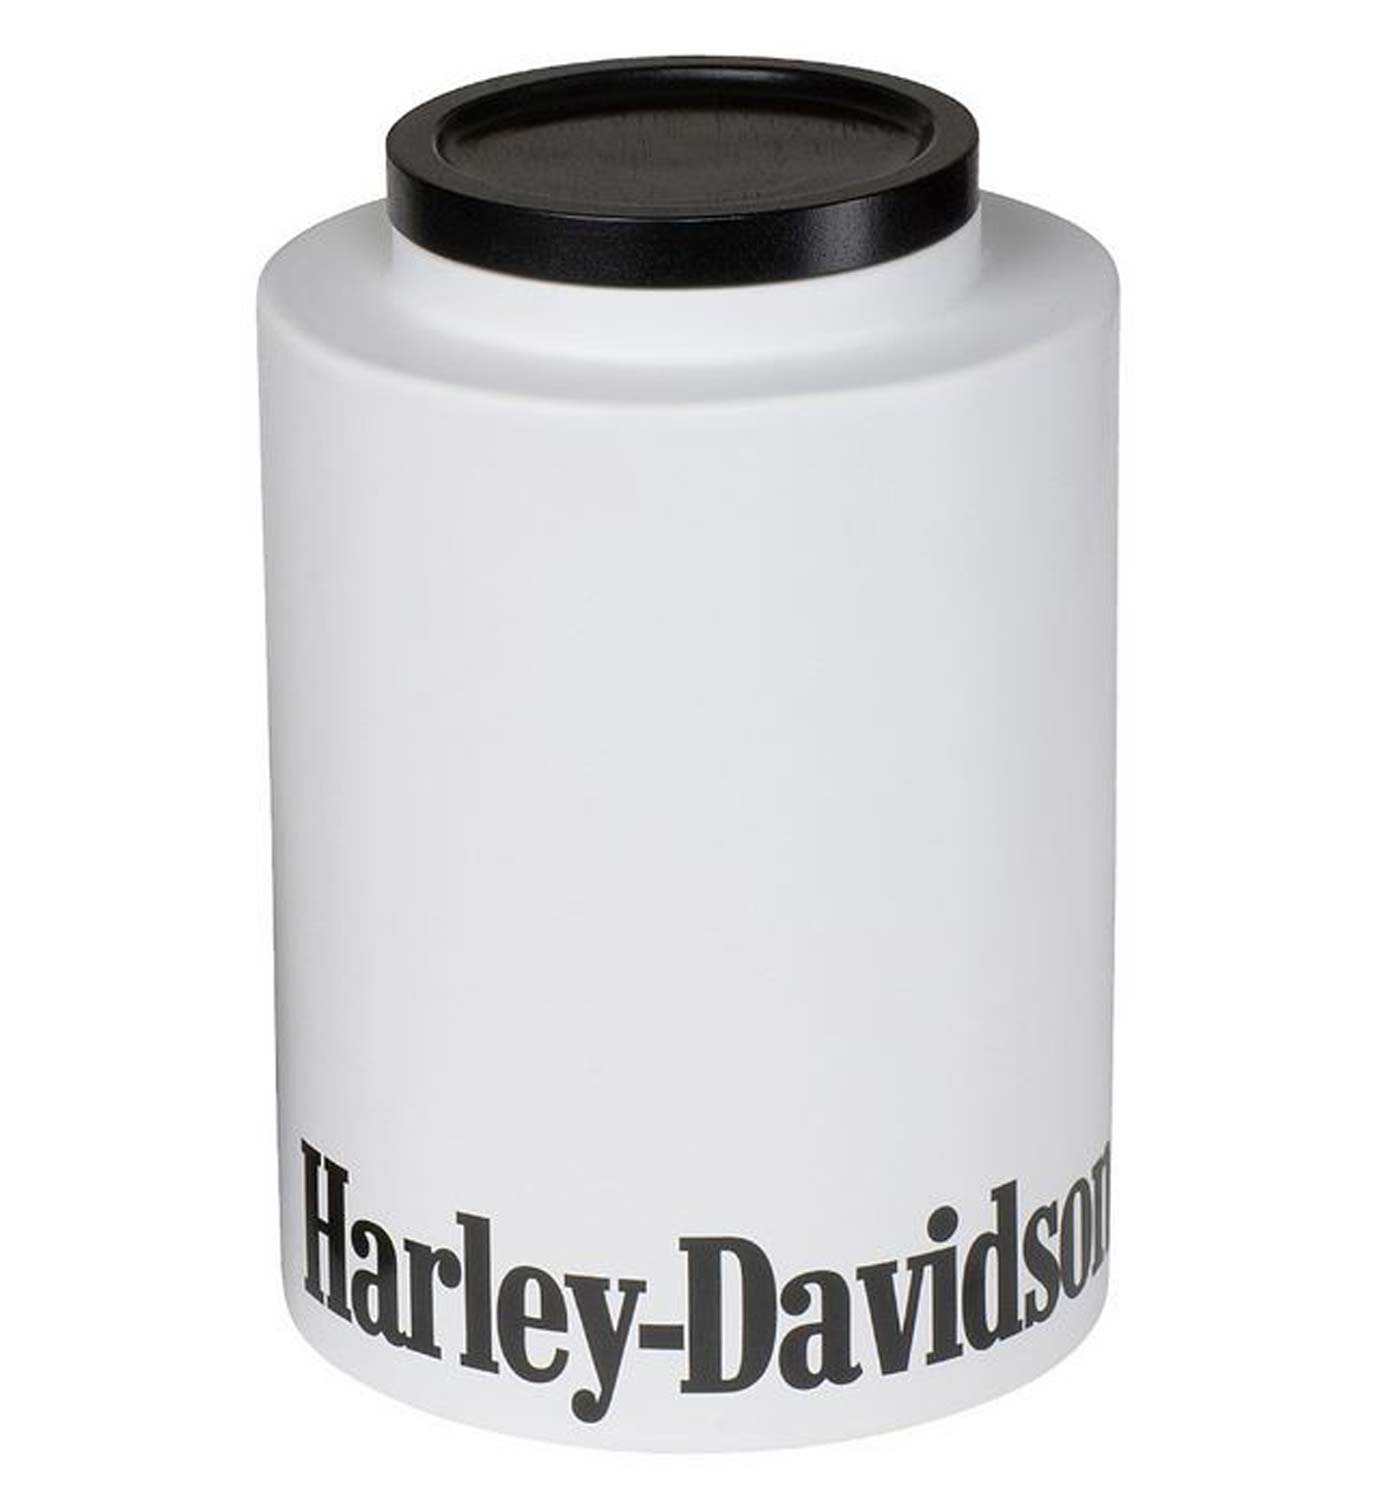 Harley-Davidson Large White Cookie Jar